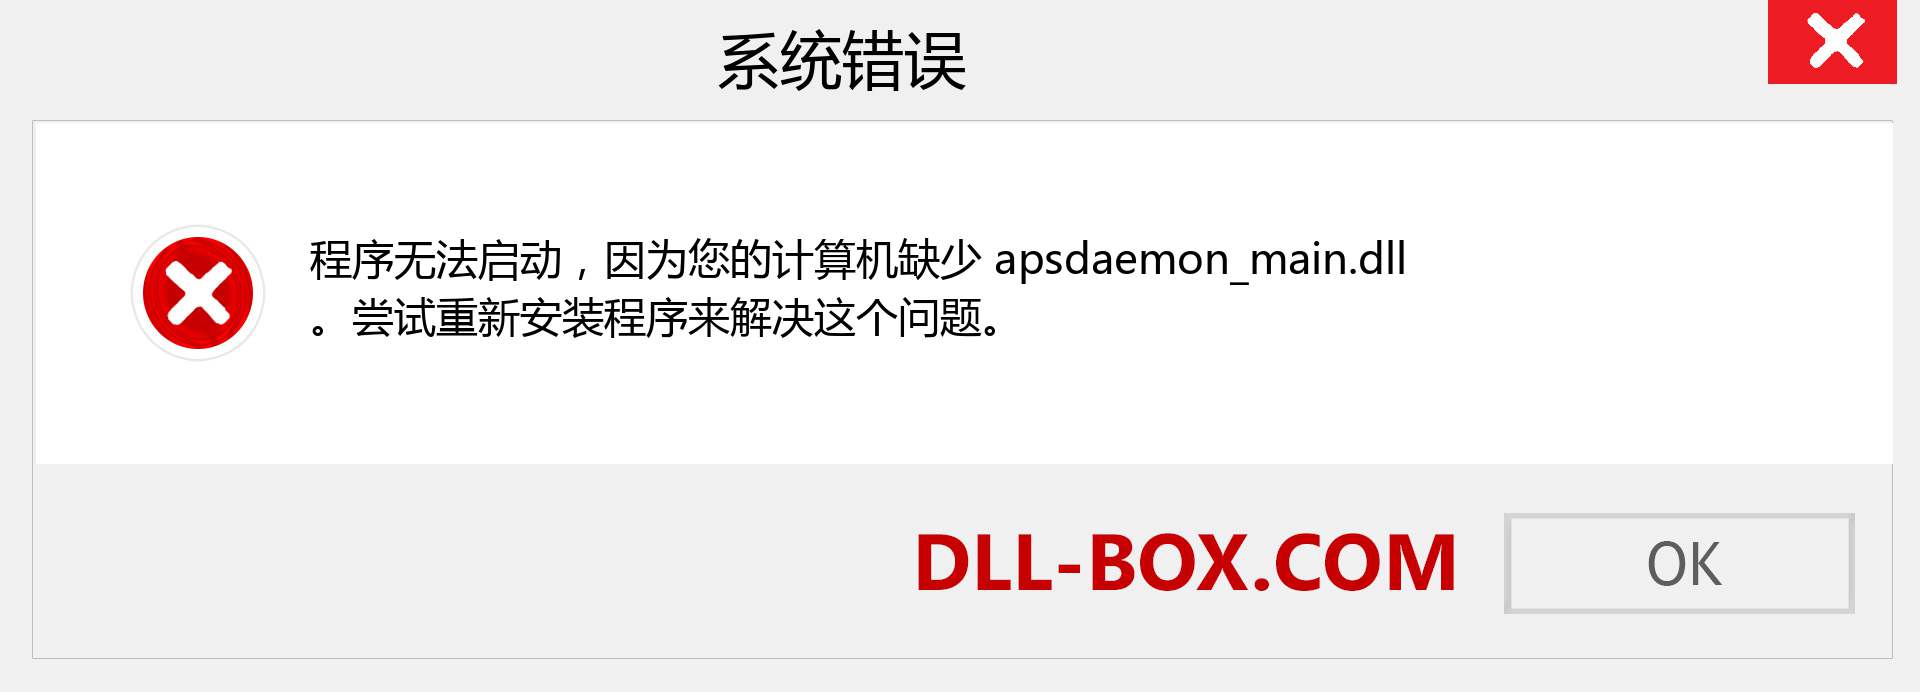 apsdaemon_main.dll 文件丢失？。 适用于 Windows 7、8、10 的下载 - 修复 Windows、照片、图像上的 apsdaemon_main dll 丢失错误